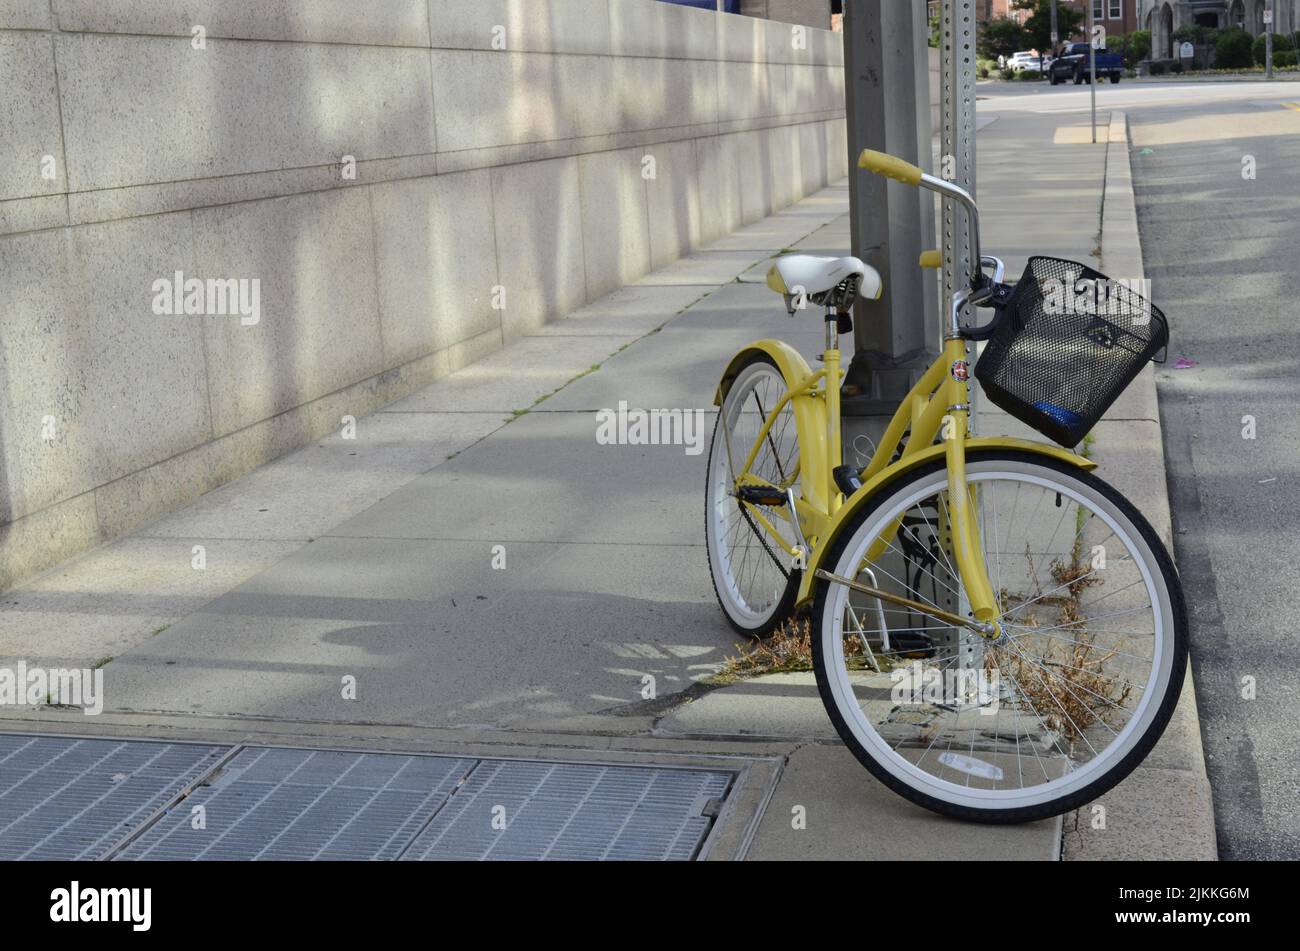 Eine niedliche Aufnahme eines gelben Fahrrads, das auf einer Stange in einer sauberen Straße neben der Straße gelehnt ist Stockfoto